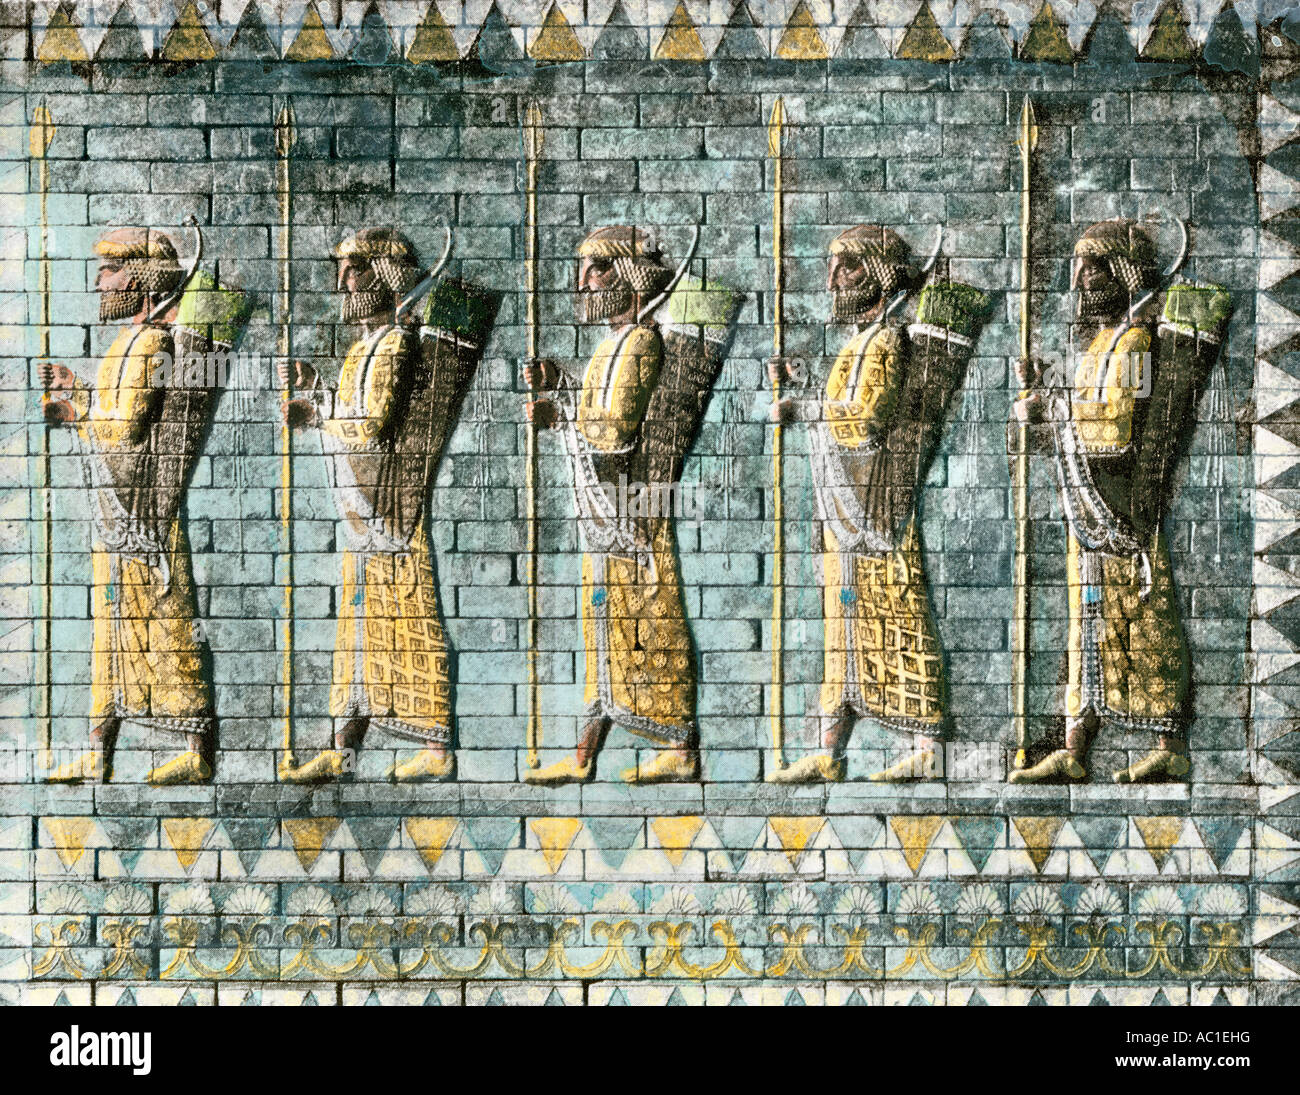 Bogenschützen der Königlichen persischen Guard von Darius aus der Halle des Artaxerxes II. in Susa. Handcolorierte halftone einer Abbildung Stockfoto